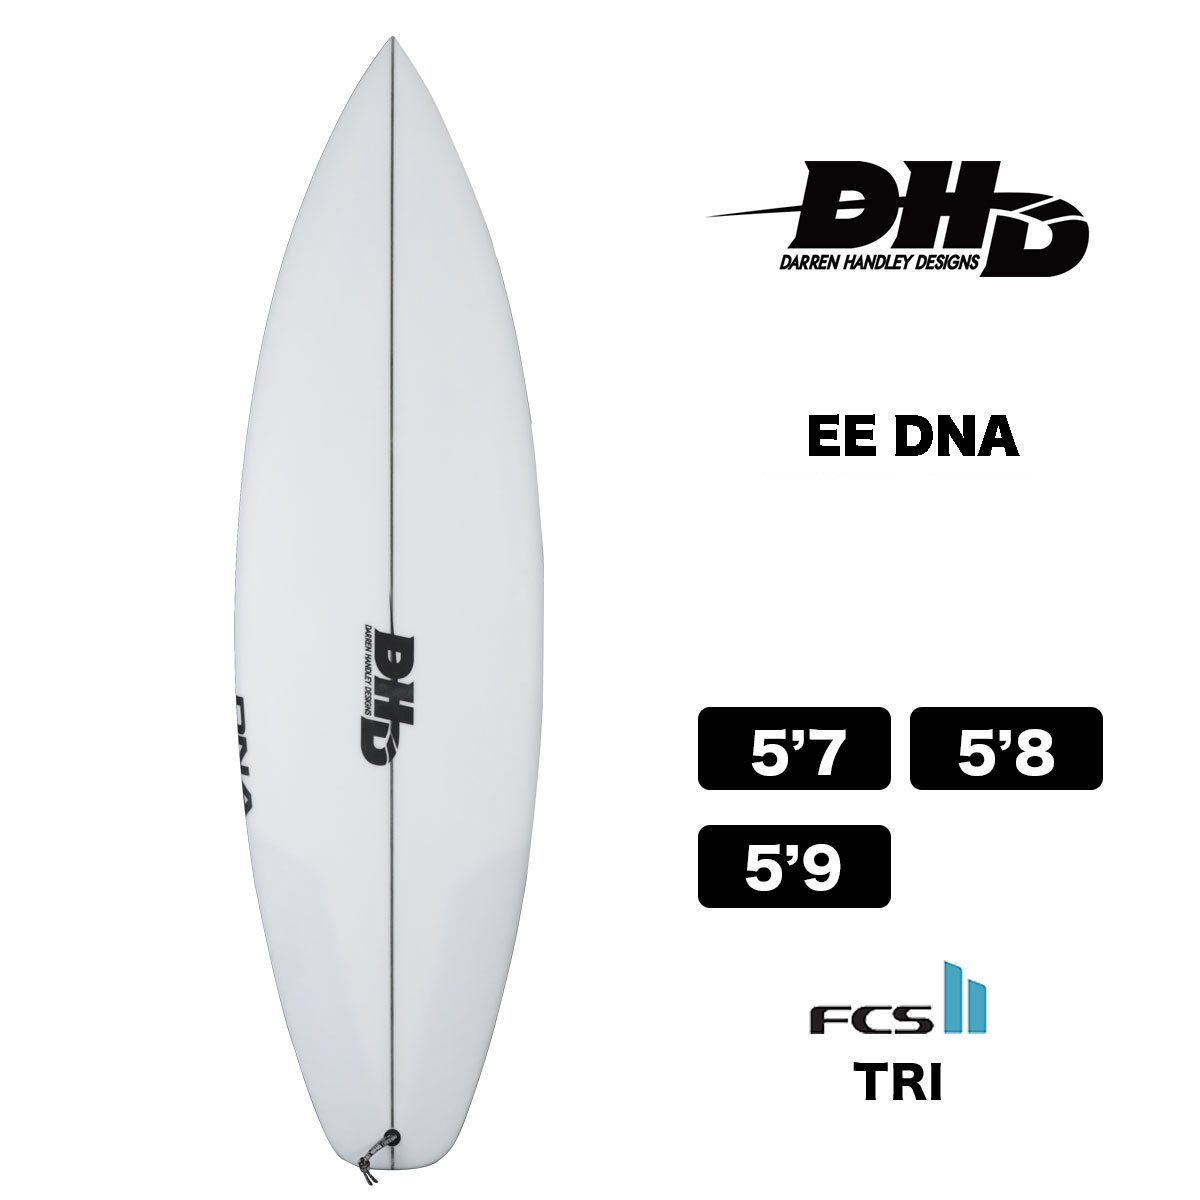 【10%OFF】DHD SURFBOARDS EE DNA ダレンハンドレーデザイン イーイーディーエヌエー ショートボード FCS2 サーフボード  トライフィン クリア-ジャックオーシャンスポーツ